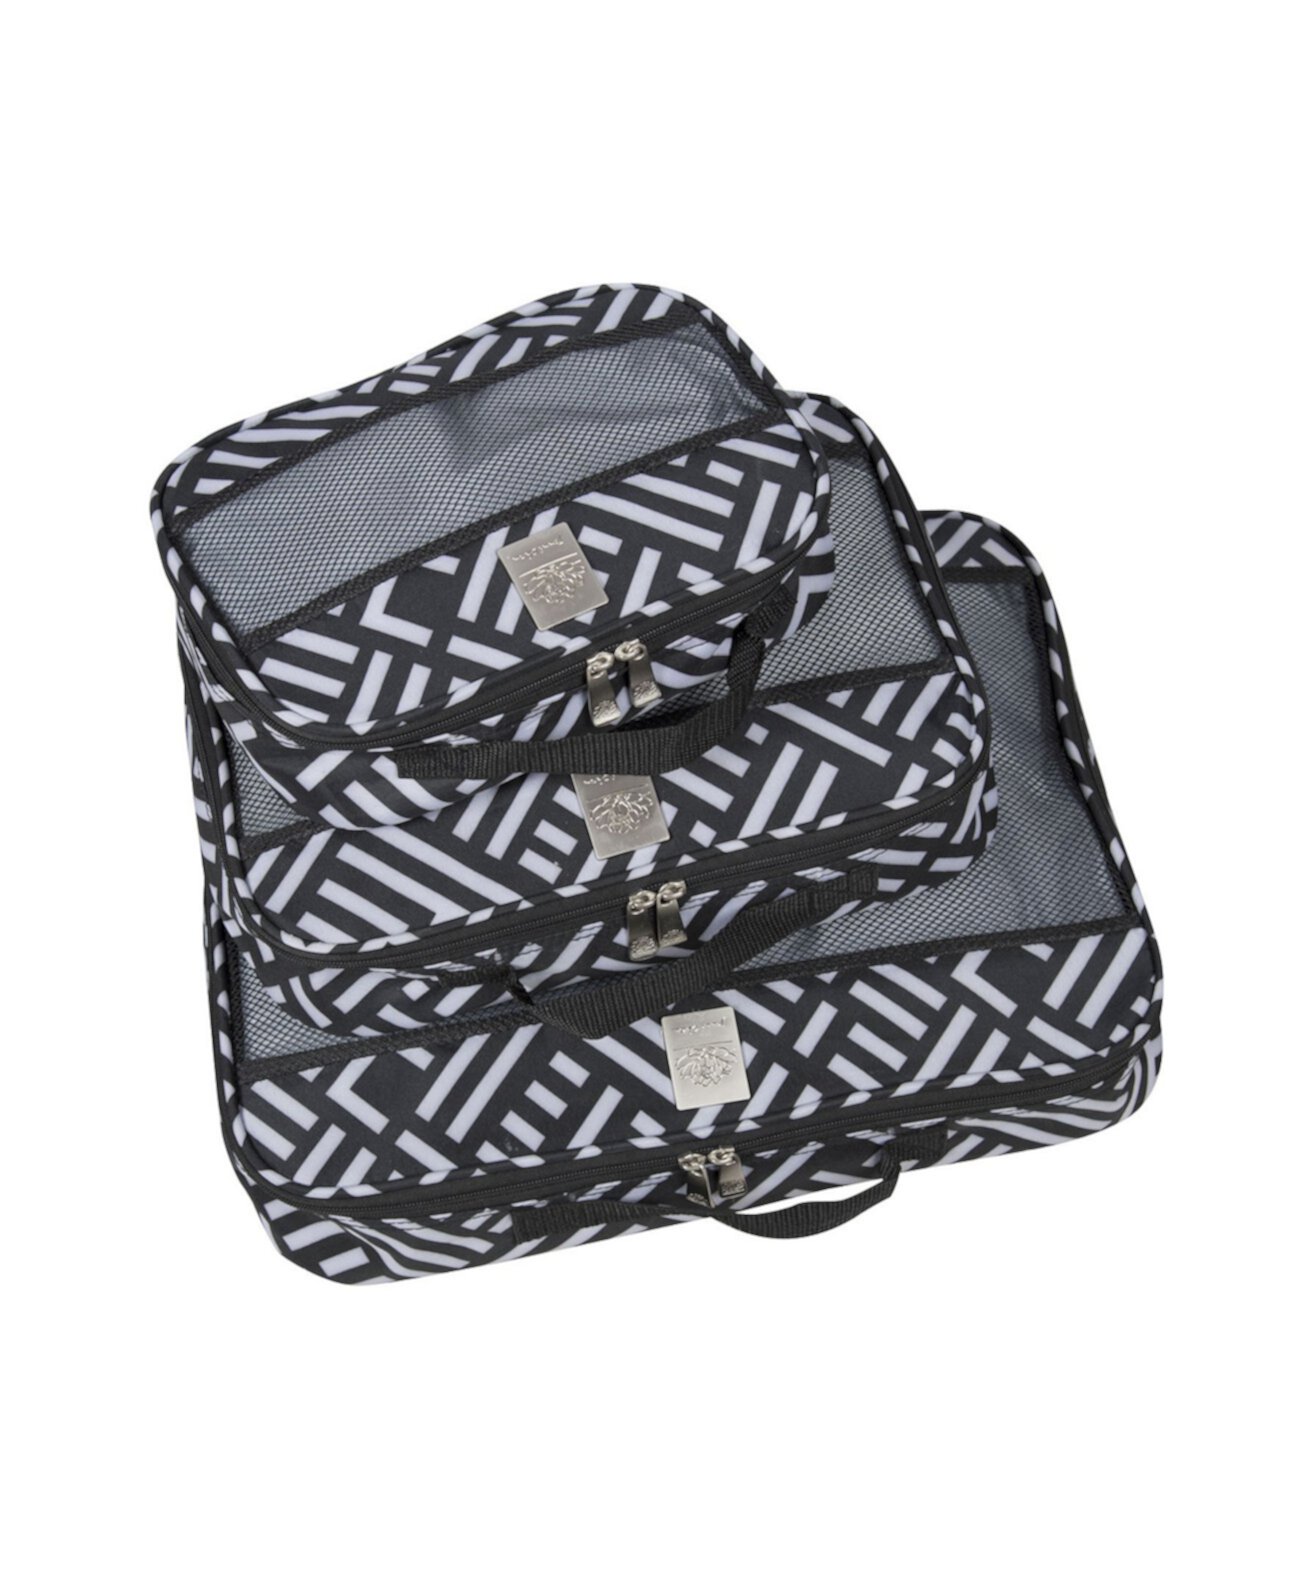 Фирменные упаковочные кубики, набор из 3 предметов Jenni Chan